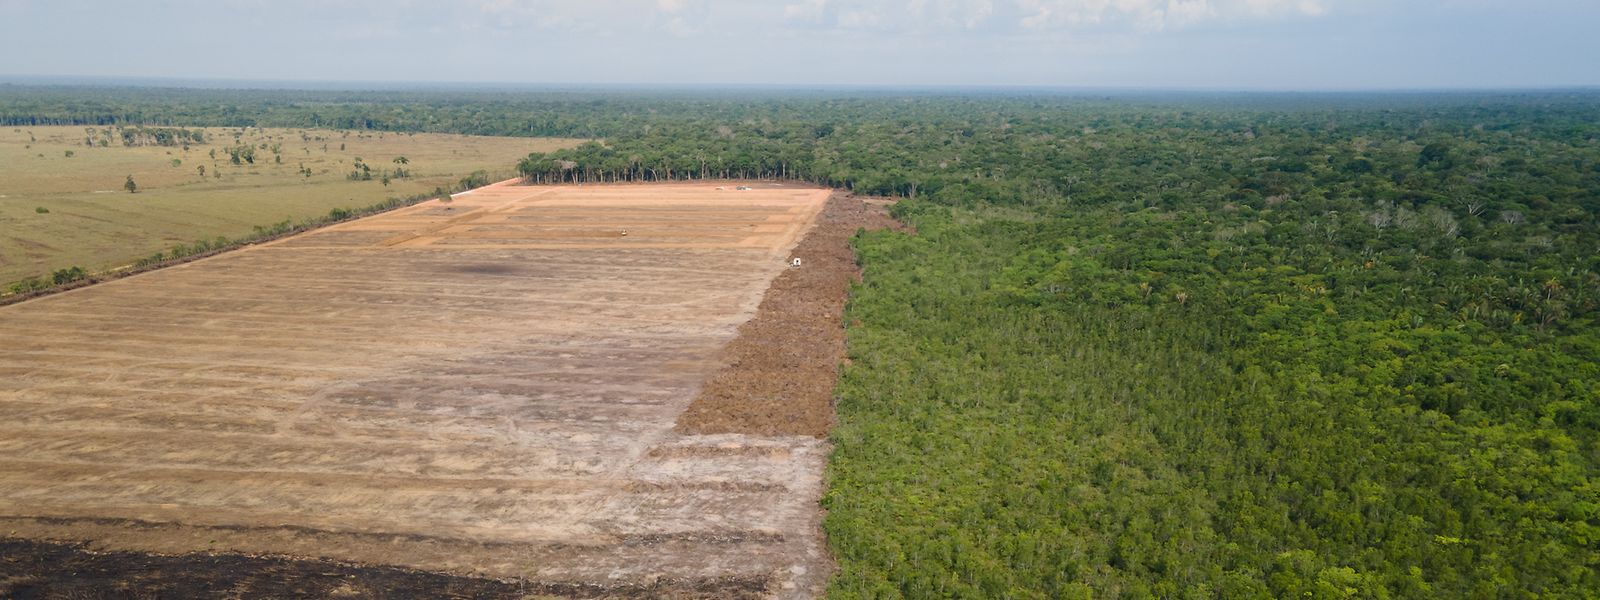 Das Luftbild zeigt eine verbrannte und abgeholzte Fläche in einem Amazonas-Gebiet.